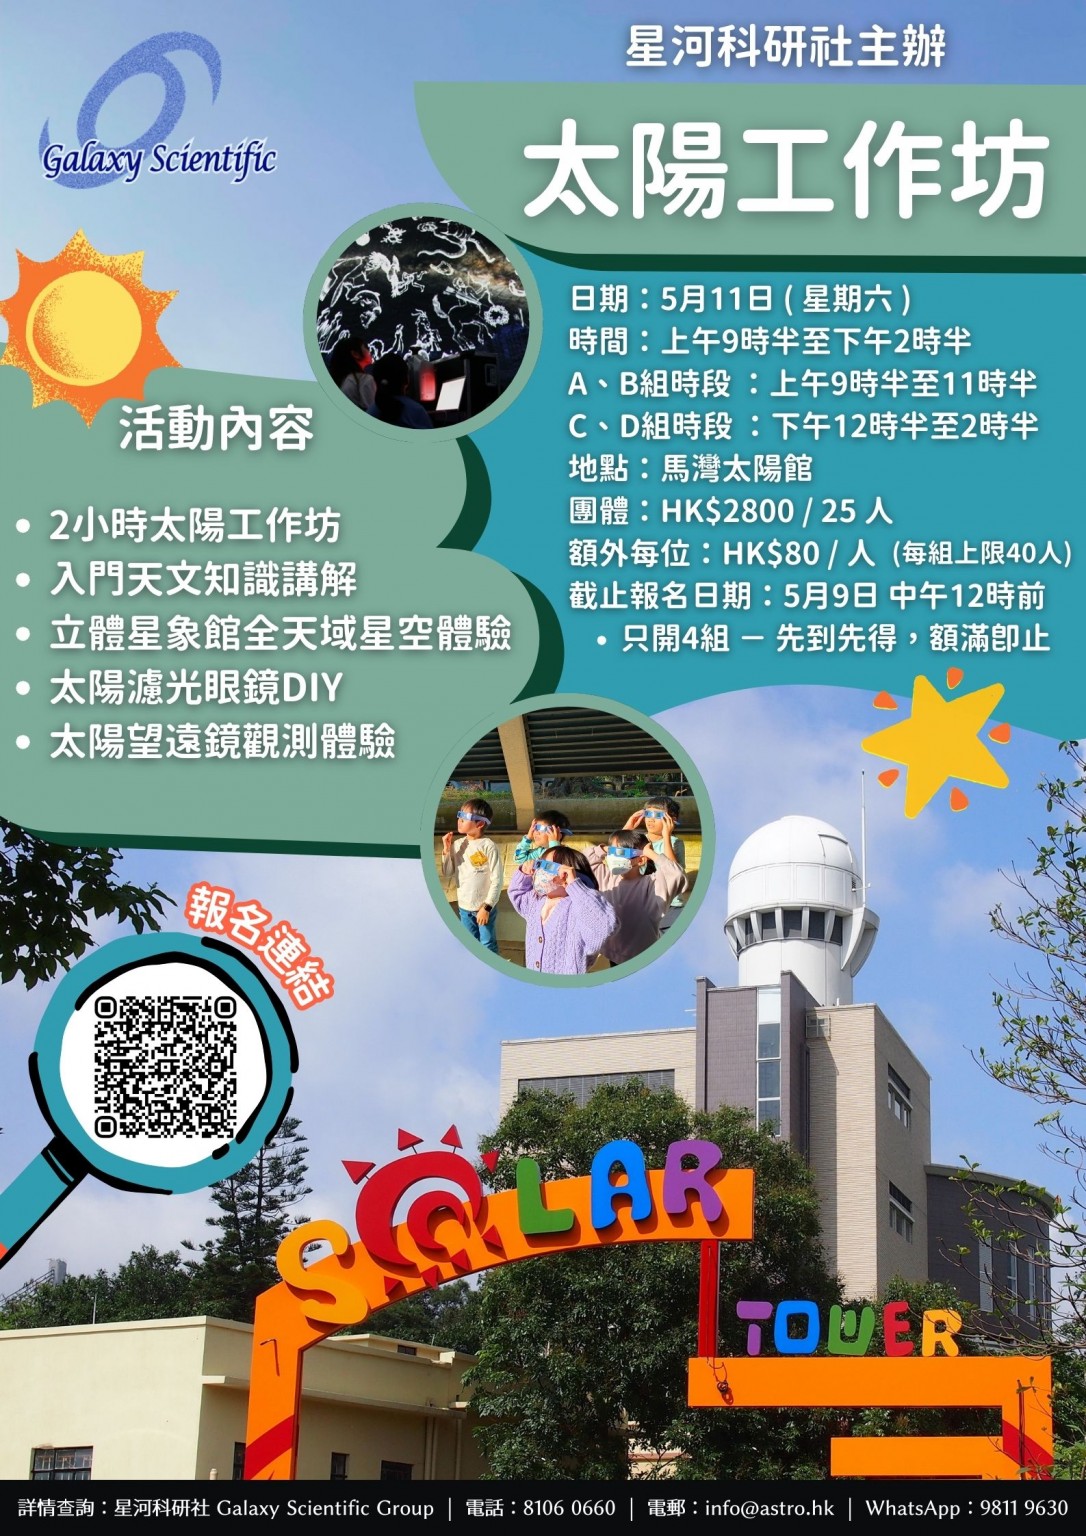 馬灣太陽工作坊（額外參加者每位HK$80，每組上限40人）